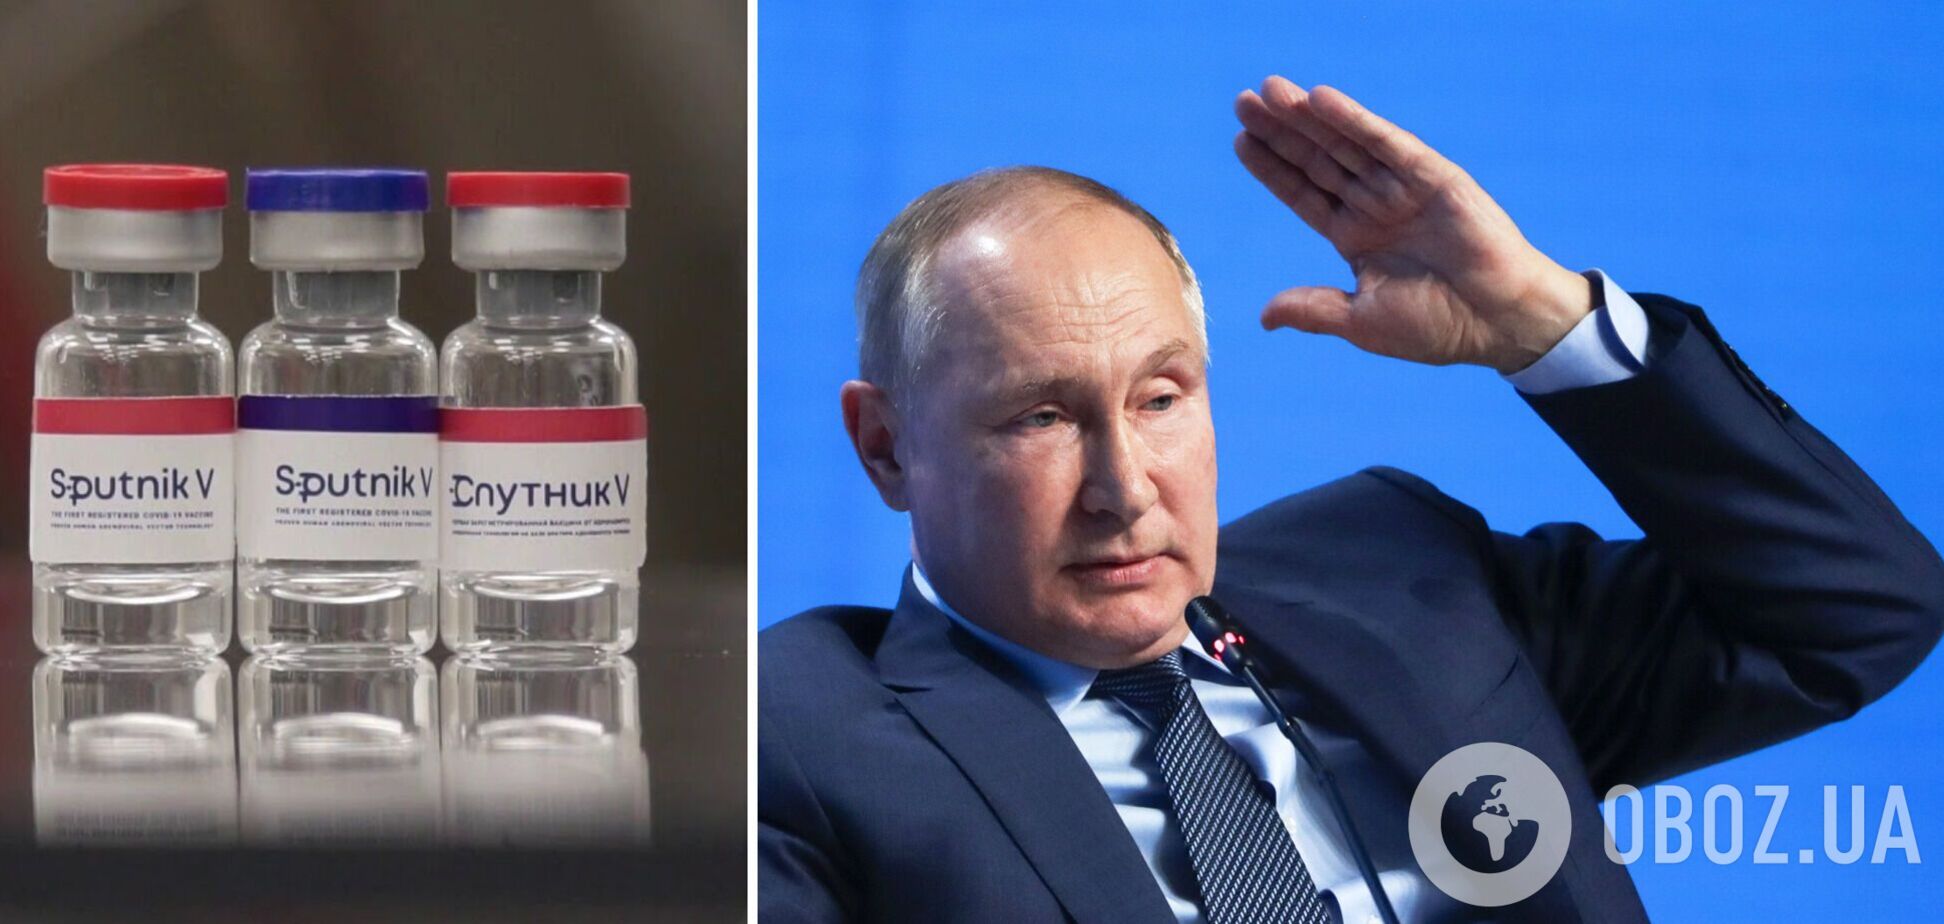 Путин вызвался в добровольцы на испытаниях назальной вакцины 'Спутник V'